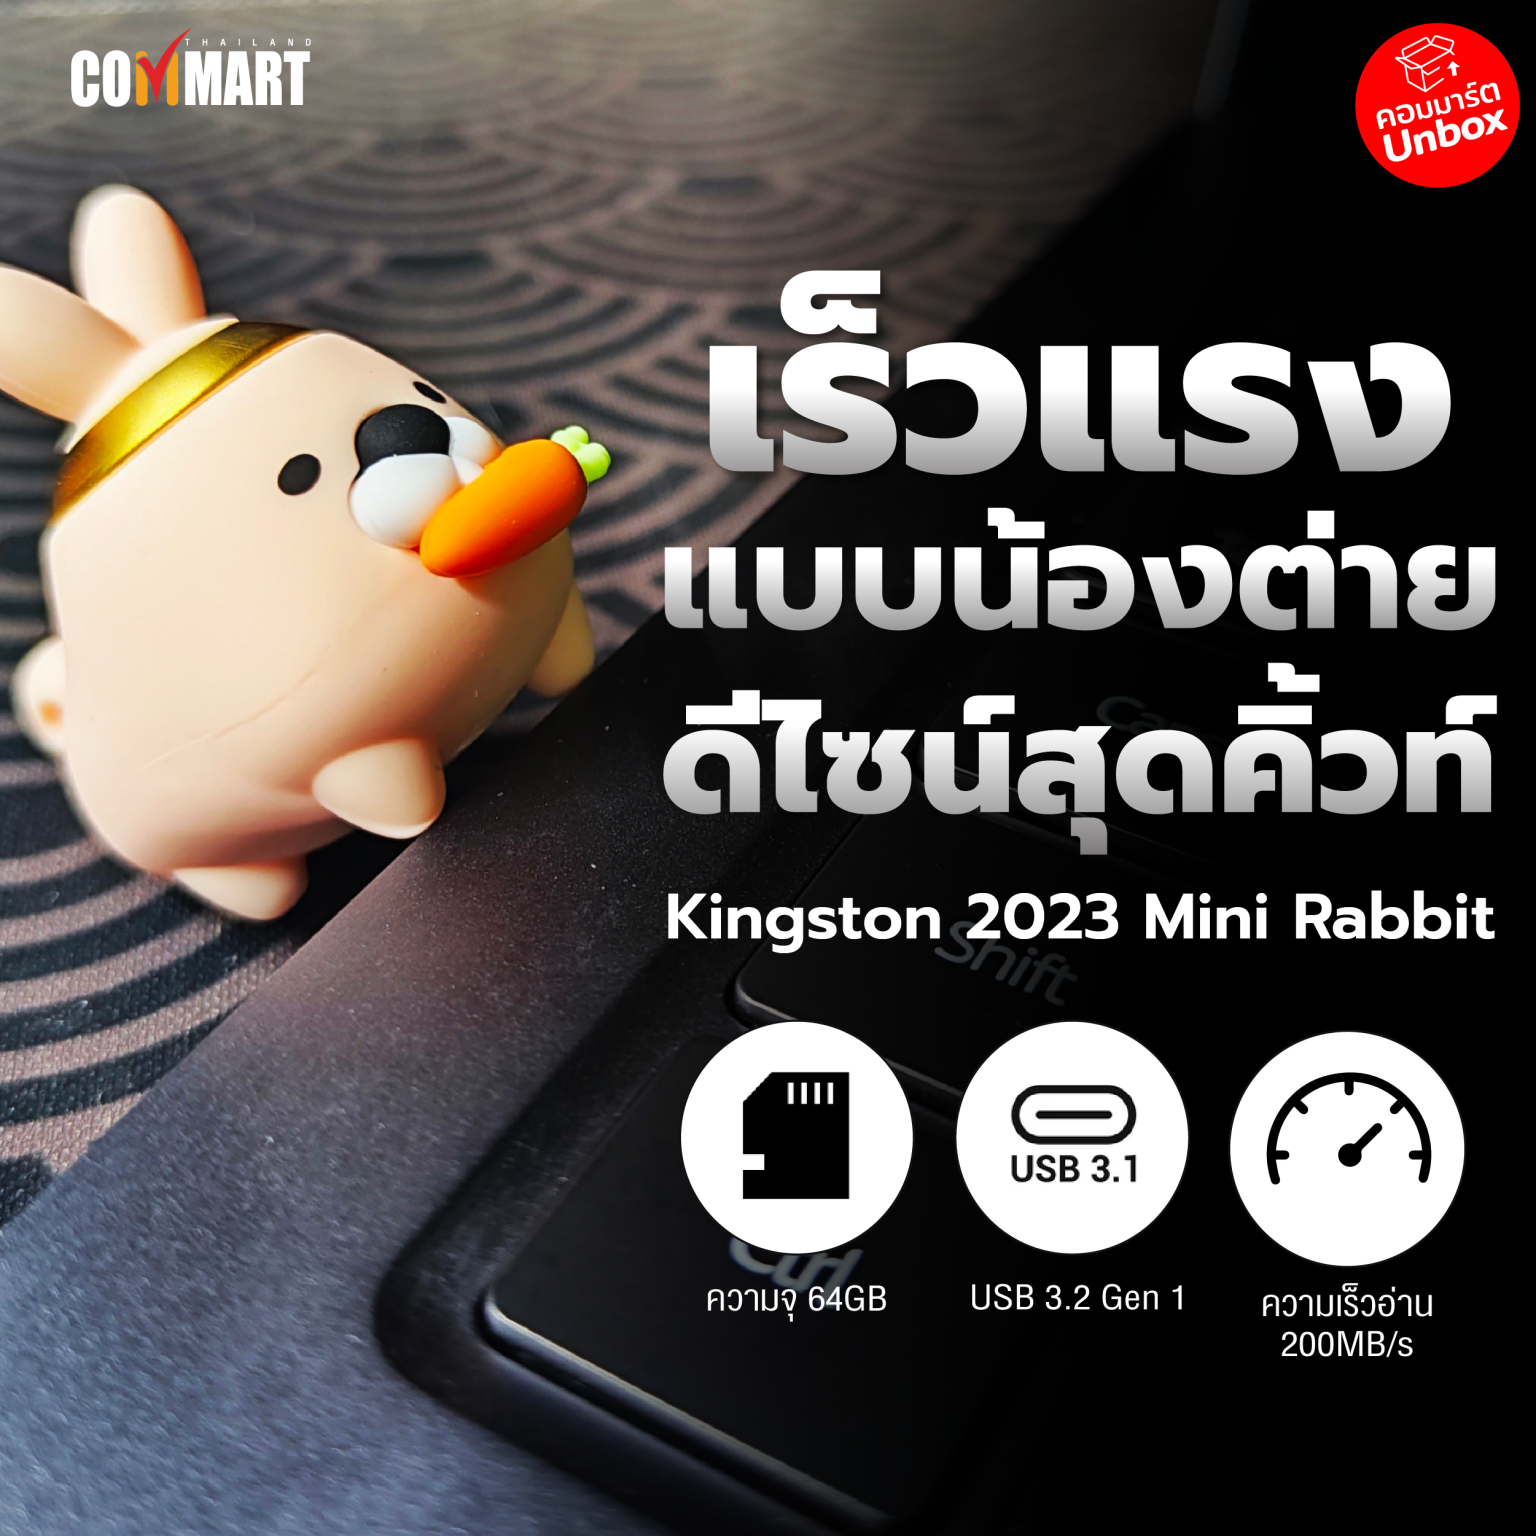 รีวิว : Kingston 2023 Mini Rabbit ฉลองปีกระต่าย ดีไซน์ที่น่าสะสม